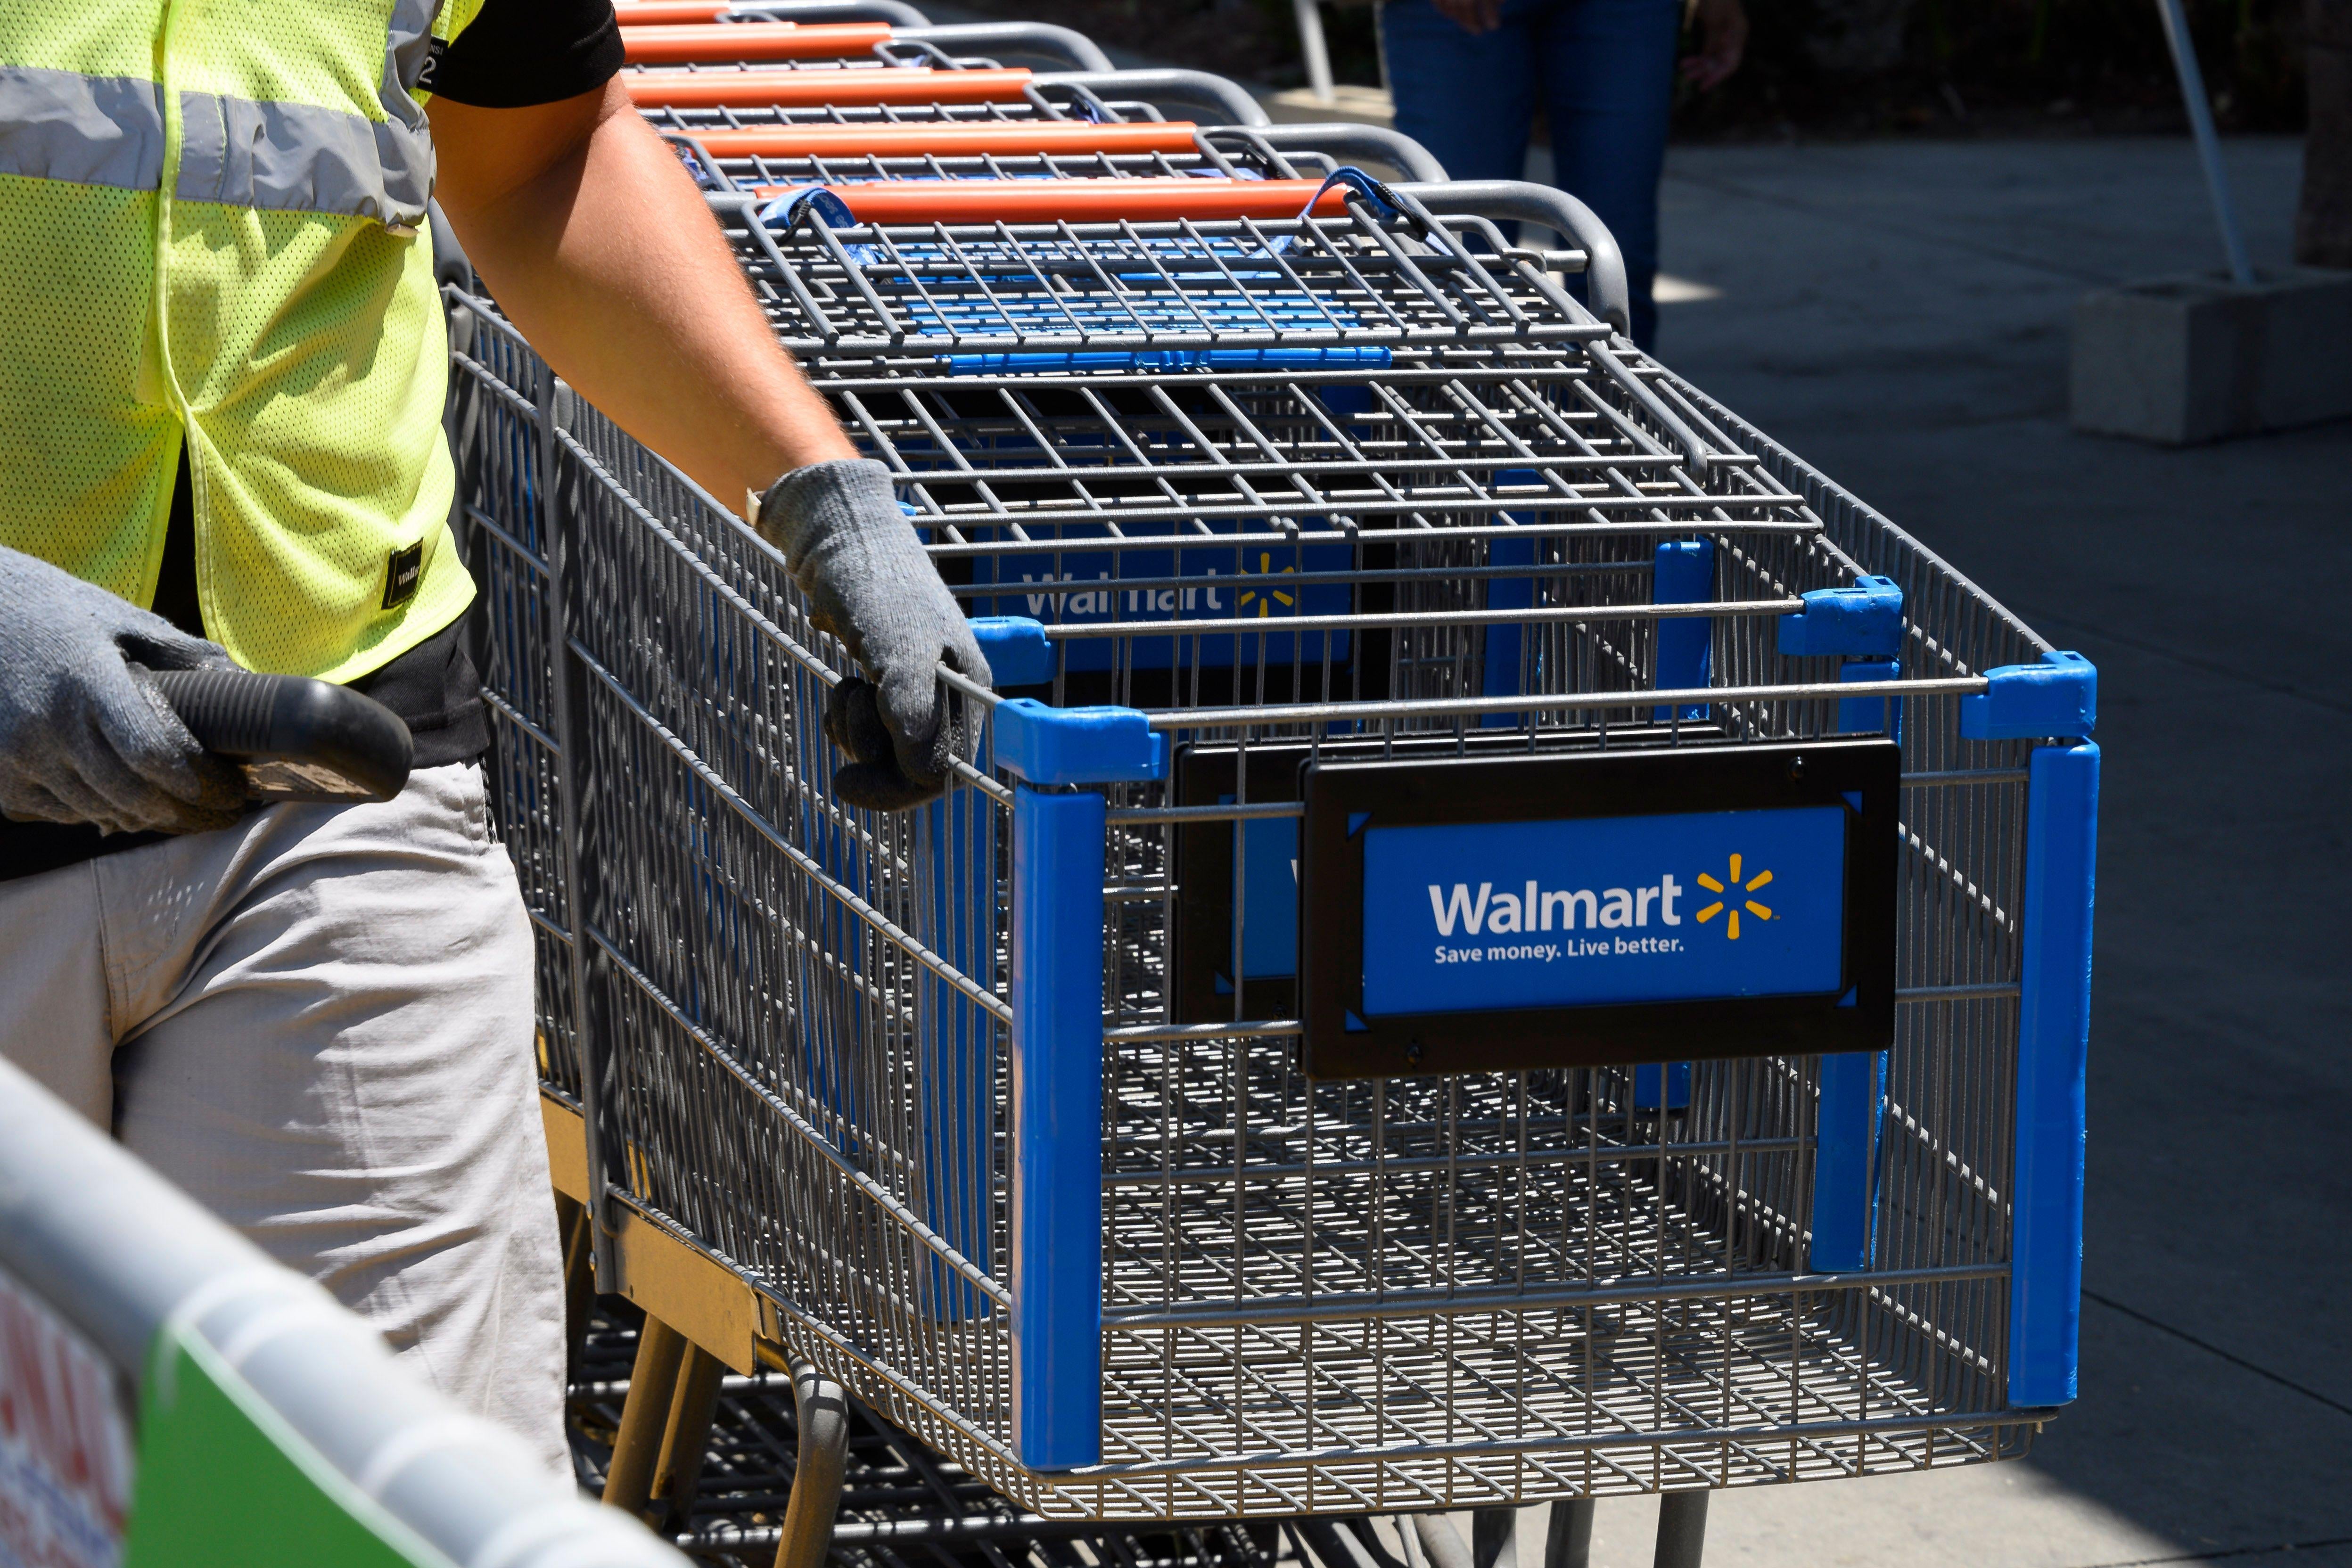 An employee gathers shopping carts